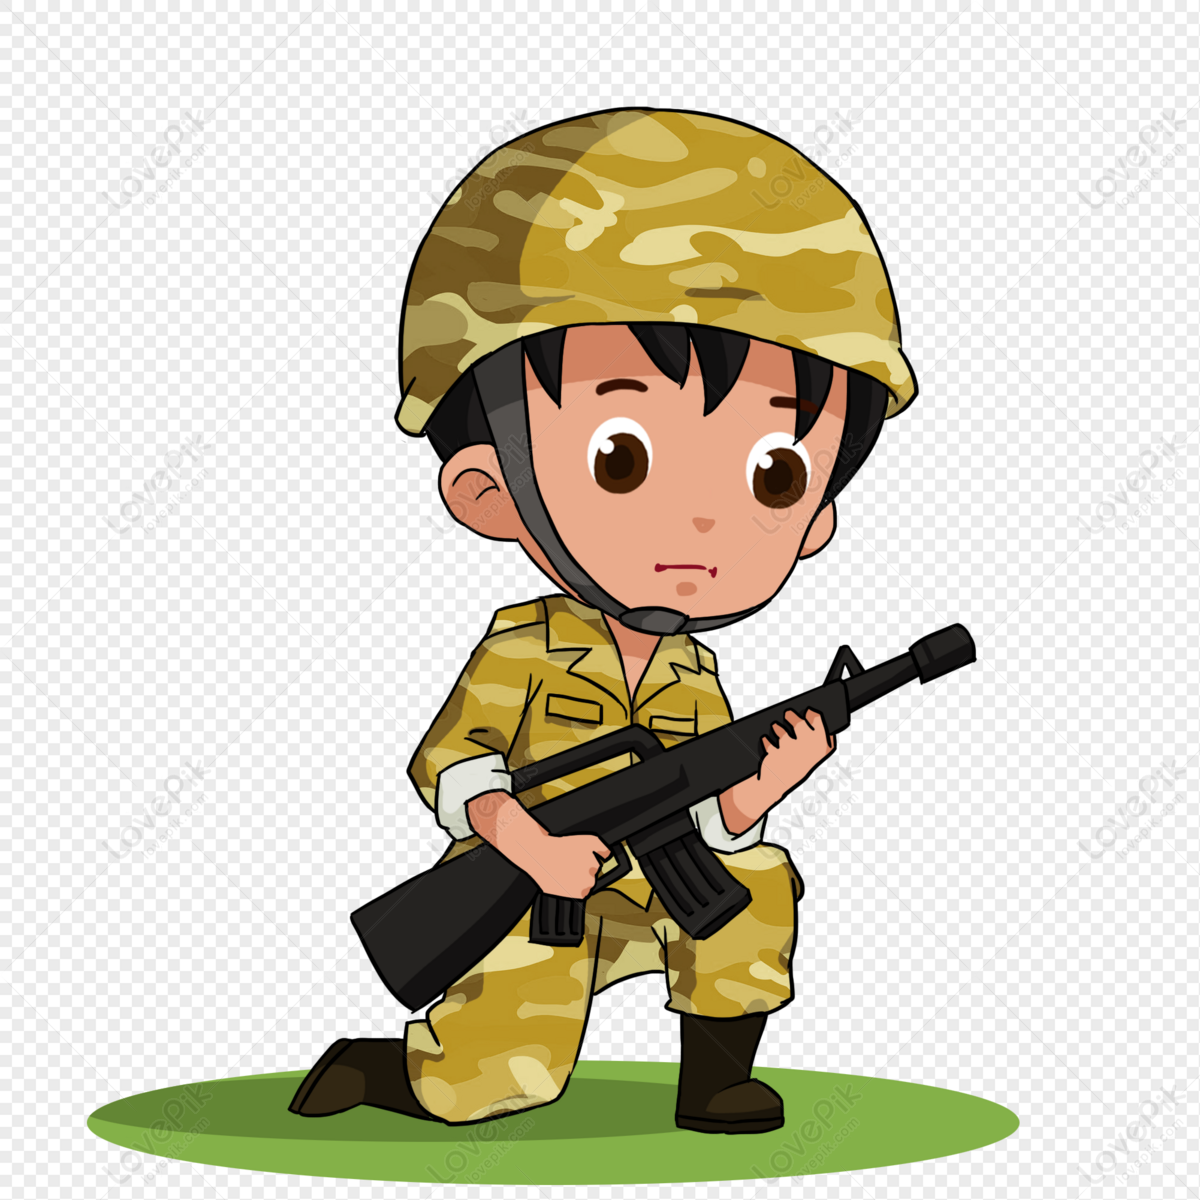 Phim hoạt hình quân đội: Với những nhân vật đáng yêu và câu chuyện thú vị, phim hoạt hình quân đội là một sự lựa chọn tuyệt vời cho các em nhỏ. Đồng thời, phim cũng có thể trình chiếu cho các cán bộ quân đội trong ngày lễ và sự kiện quan trọng.